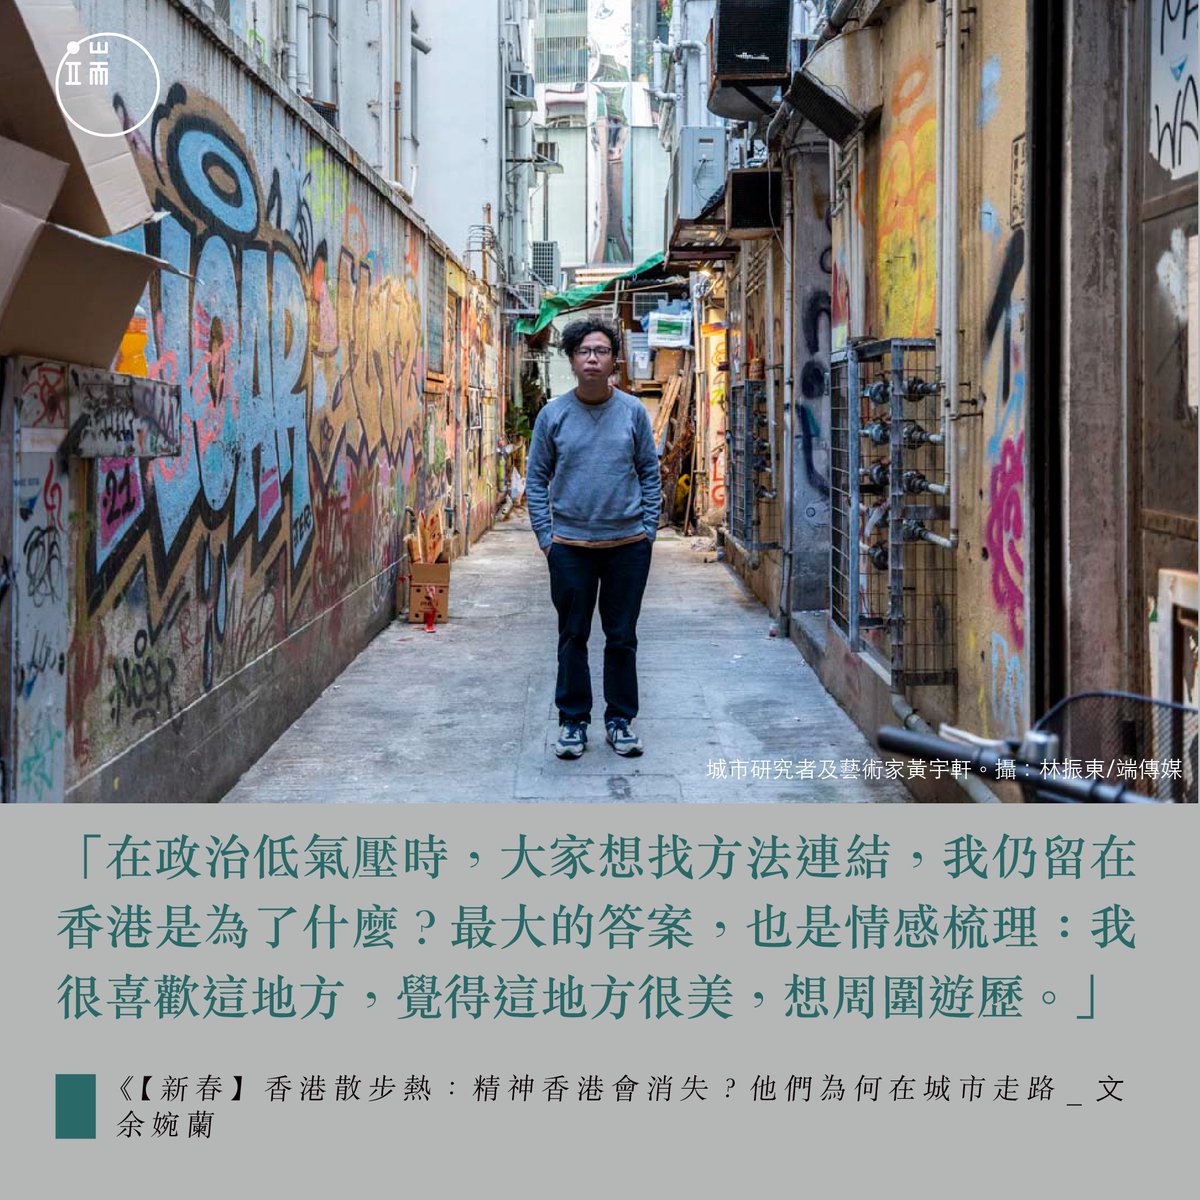 【留在香港為了甚麼？散散步，因為這小島其實很美】https://t.co/So3p2WigSH 散步是一種情感梳理，是香港人與這我城鏈接的方式之一，是「我仍留在香港是為了什麼」的答案，是訴說「，是在離散的年代裏，有了重新發現香港的機會：「我真係好鍾意香港，